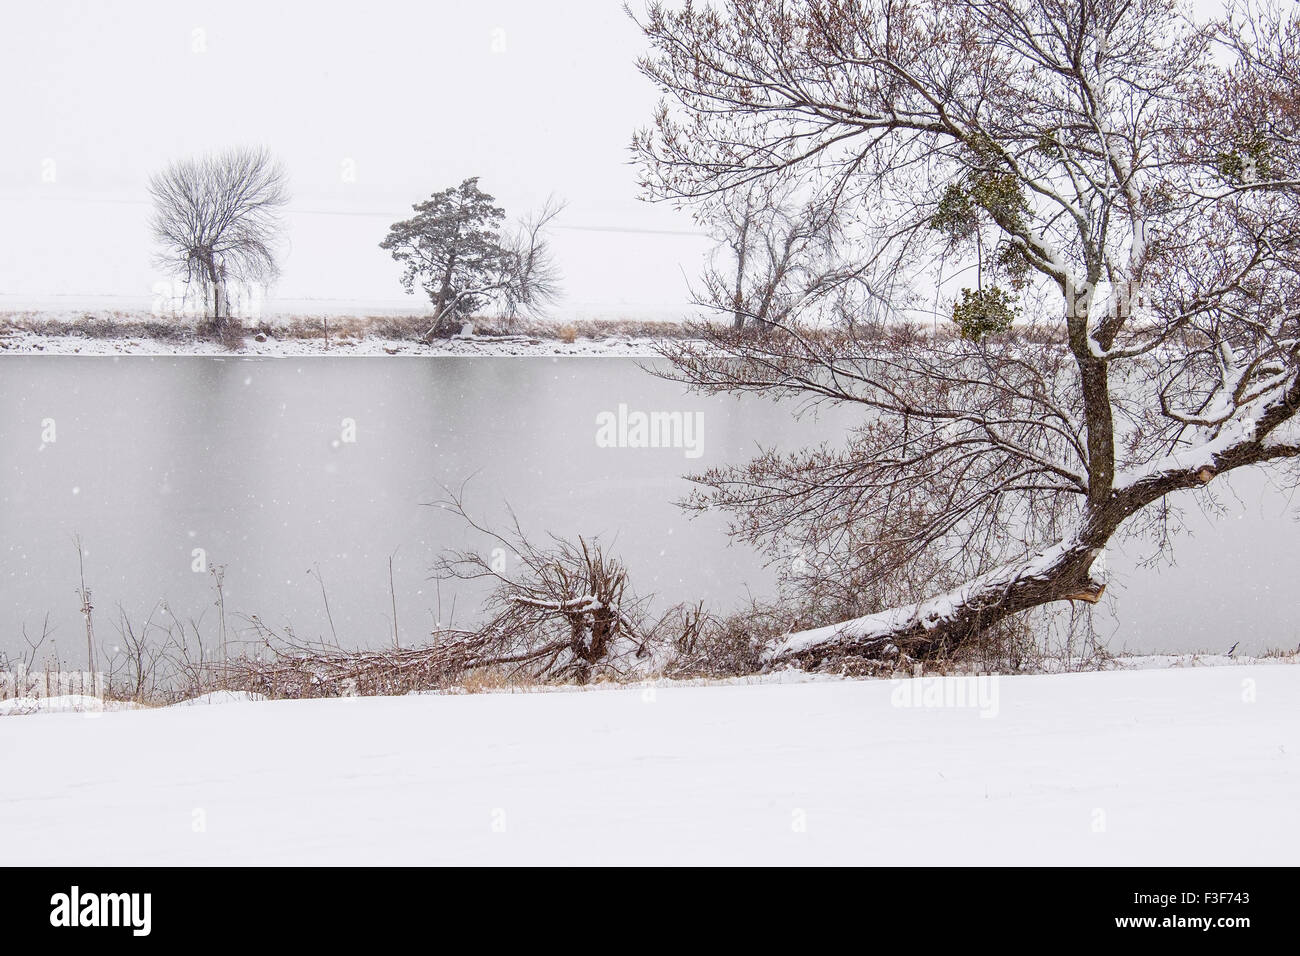 Eine schneereiche Winter-Wetter-Szene zeigt Baum, einen Kanal und eine Schnee bedeckt zugefrorenen See im Hintergrund. Oklahoma, USA Stockfoto